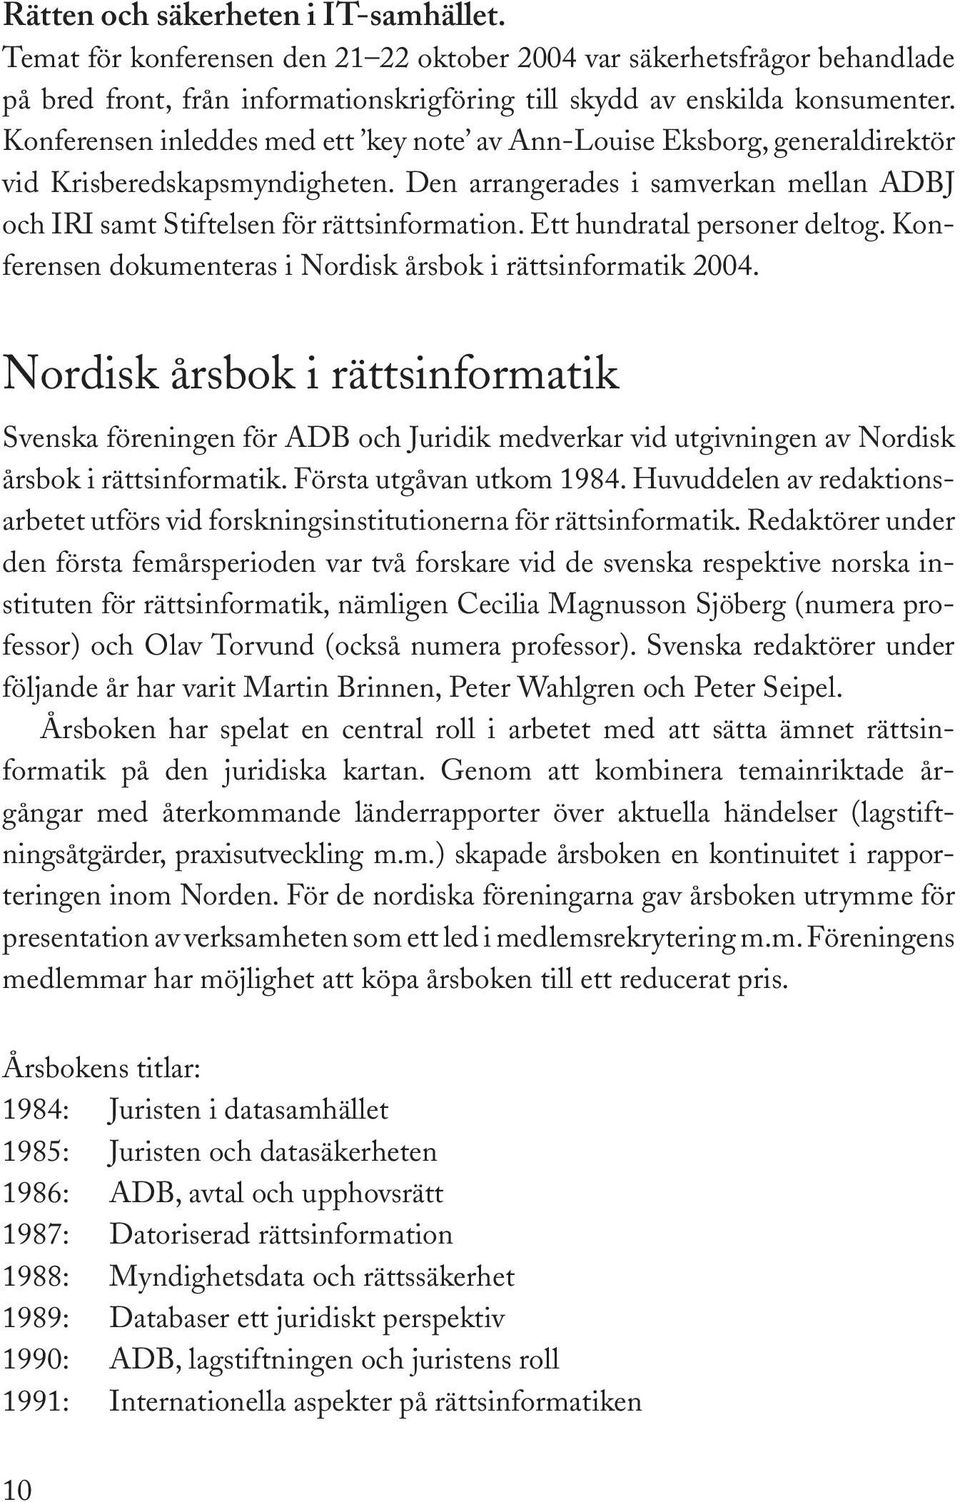 Ett hundratal personer deltog. Konferensen dokumenteras i Nordisk årsbok i rättsinformatik 2004.